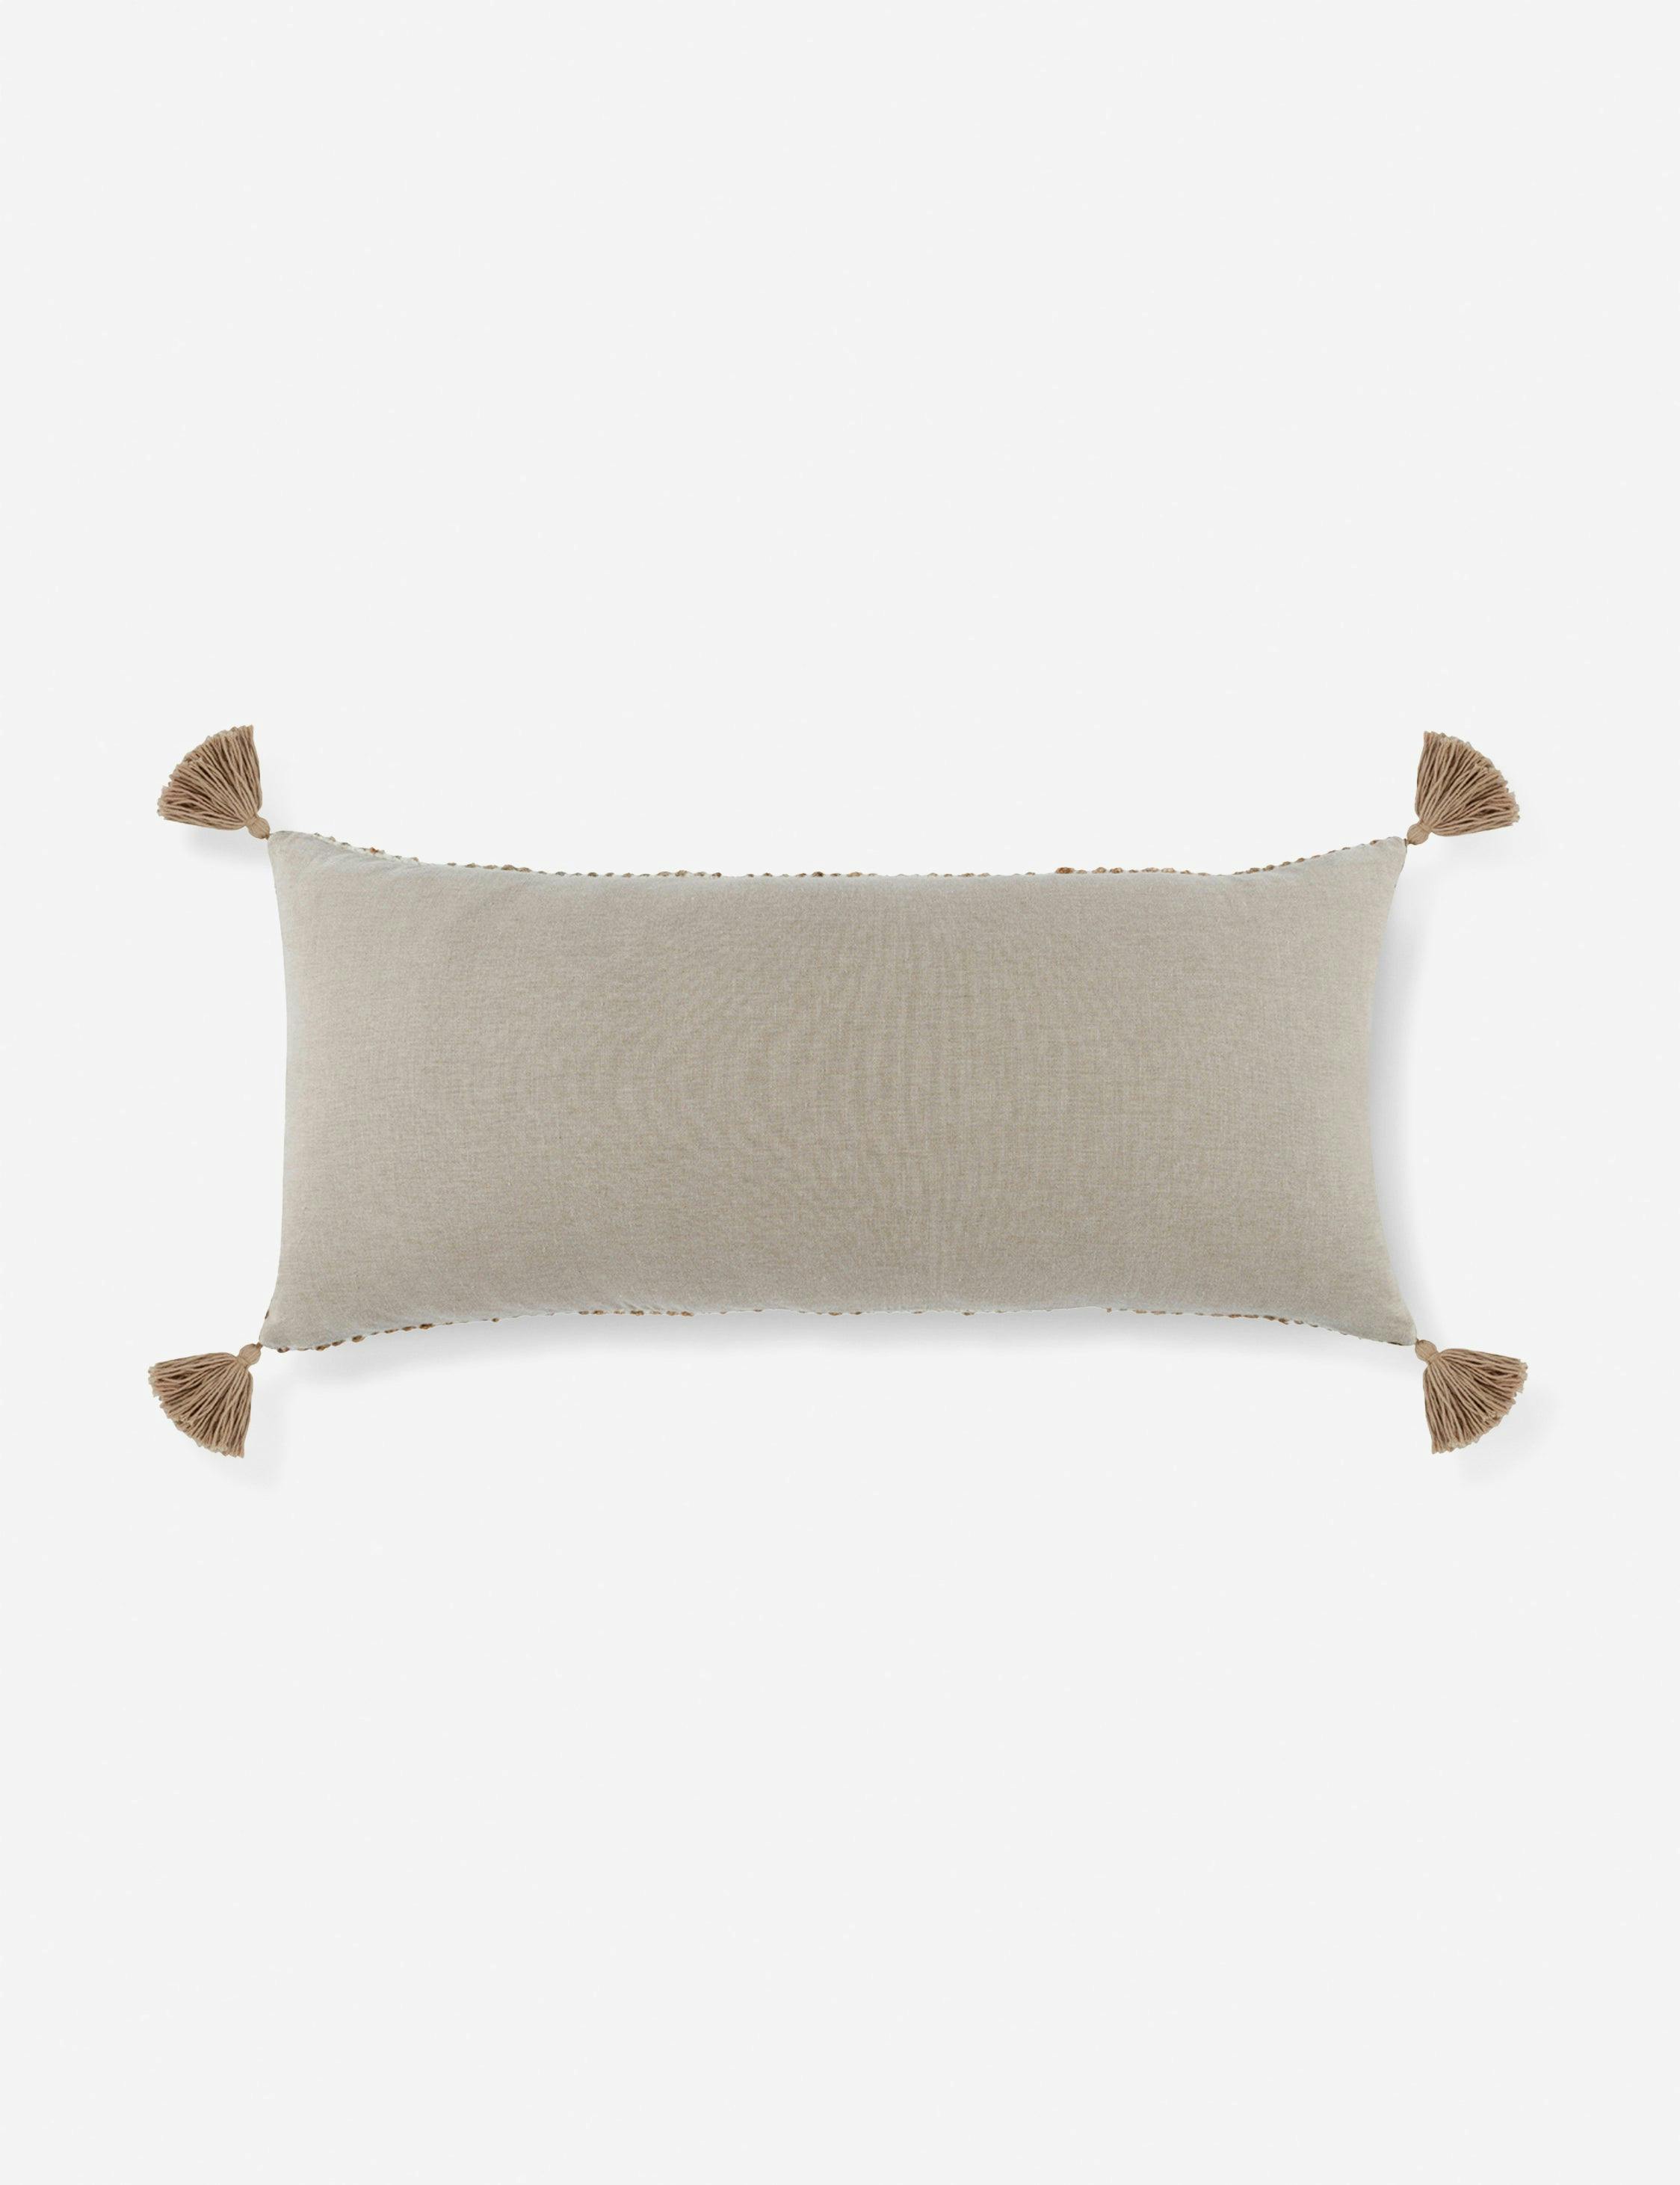 Izan 16"x36" Ivory Rectangular Lumbar Throw Pillow